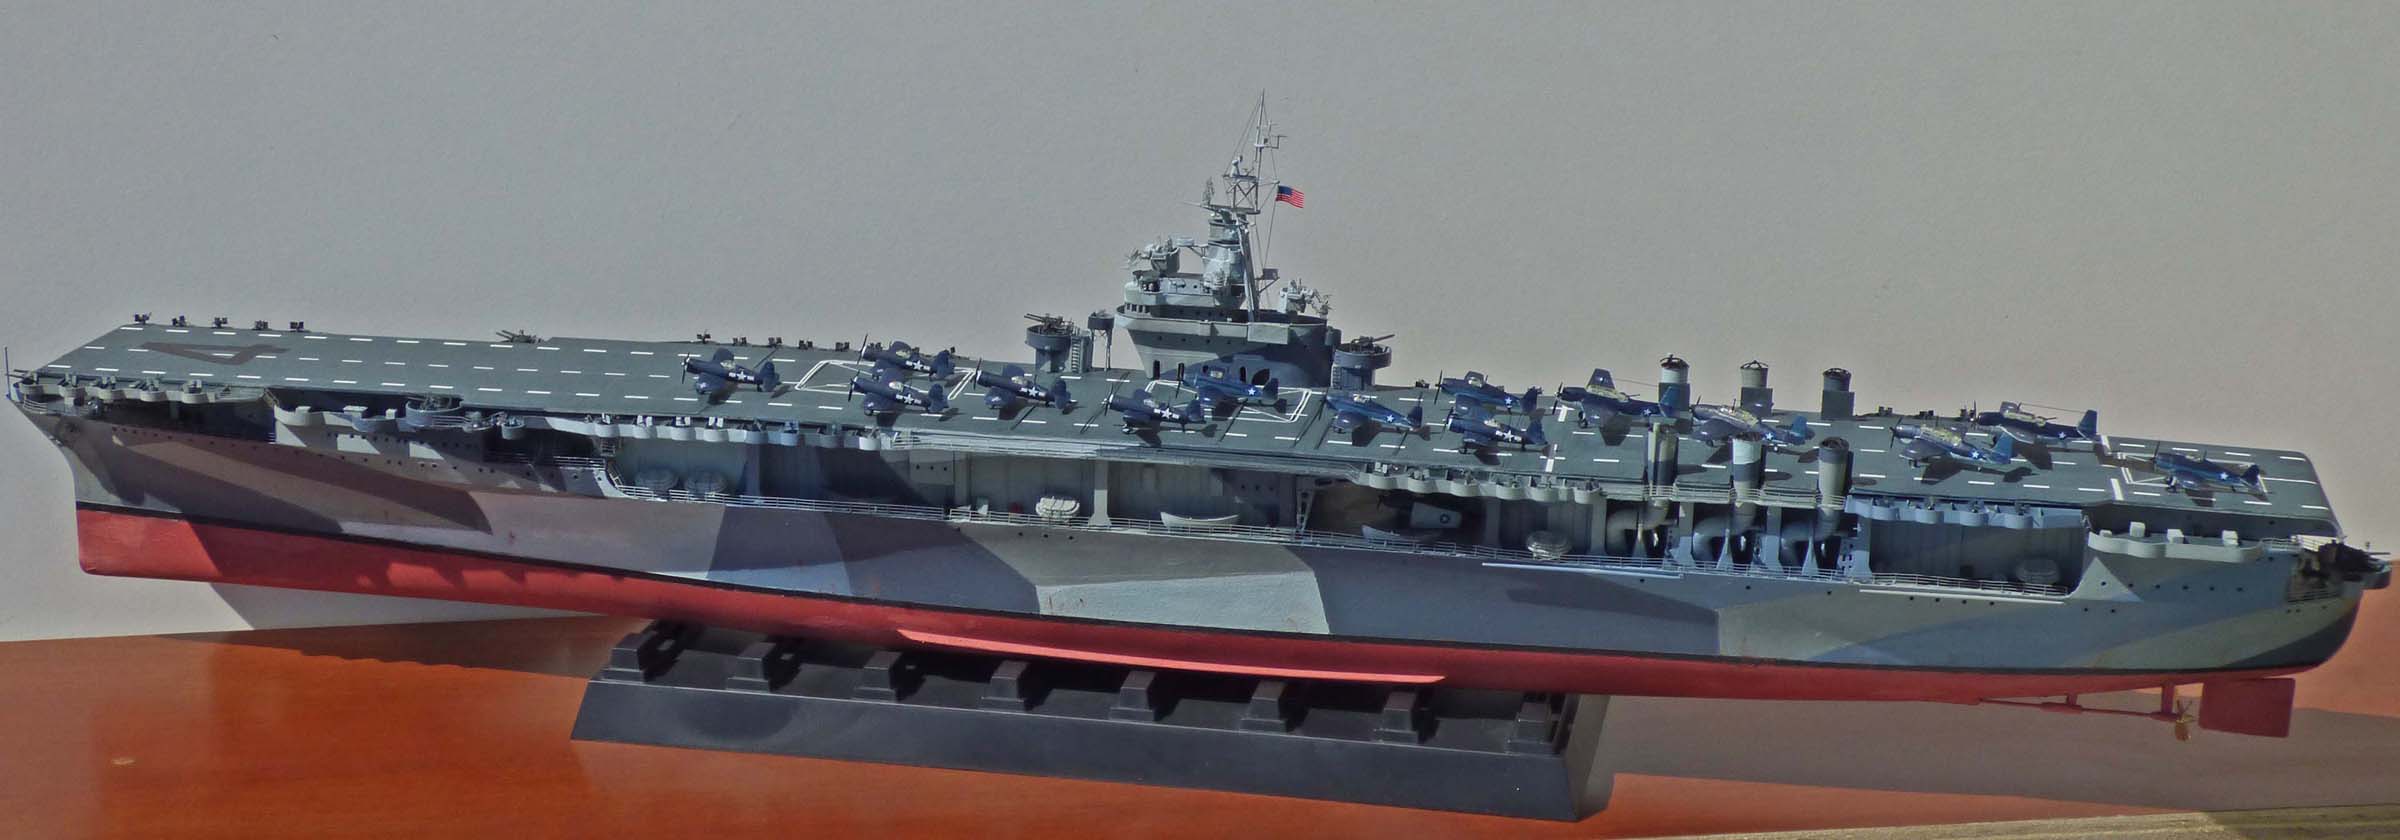 USS-Ranger-13